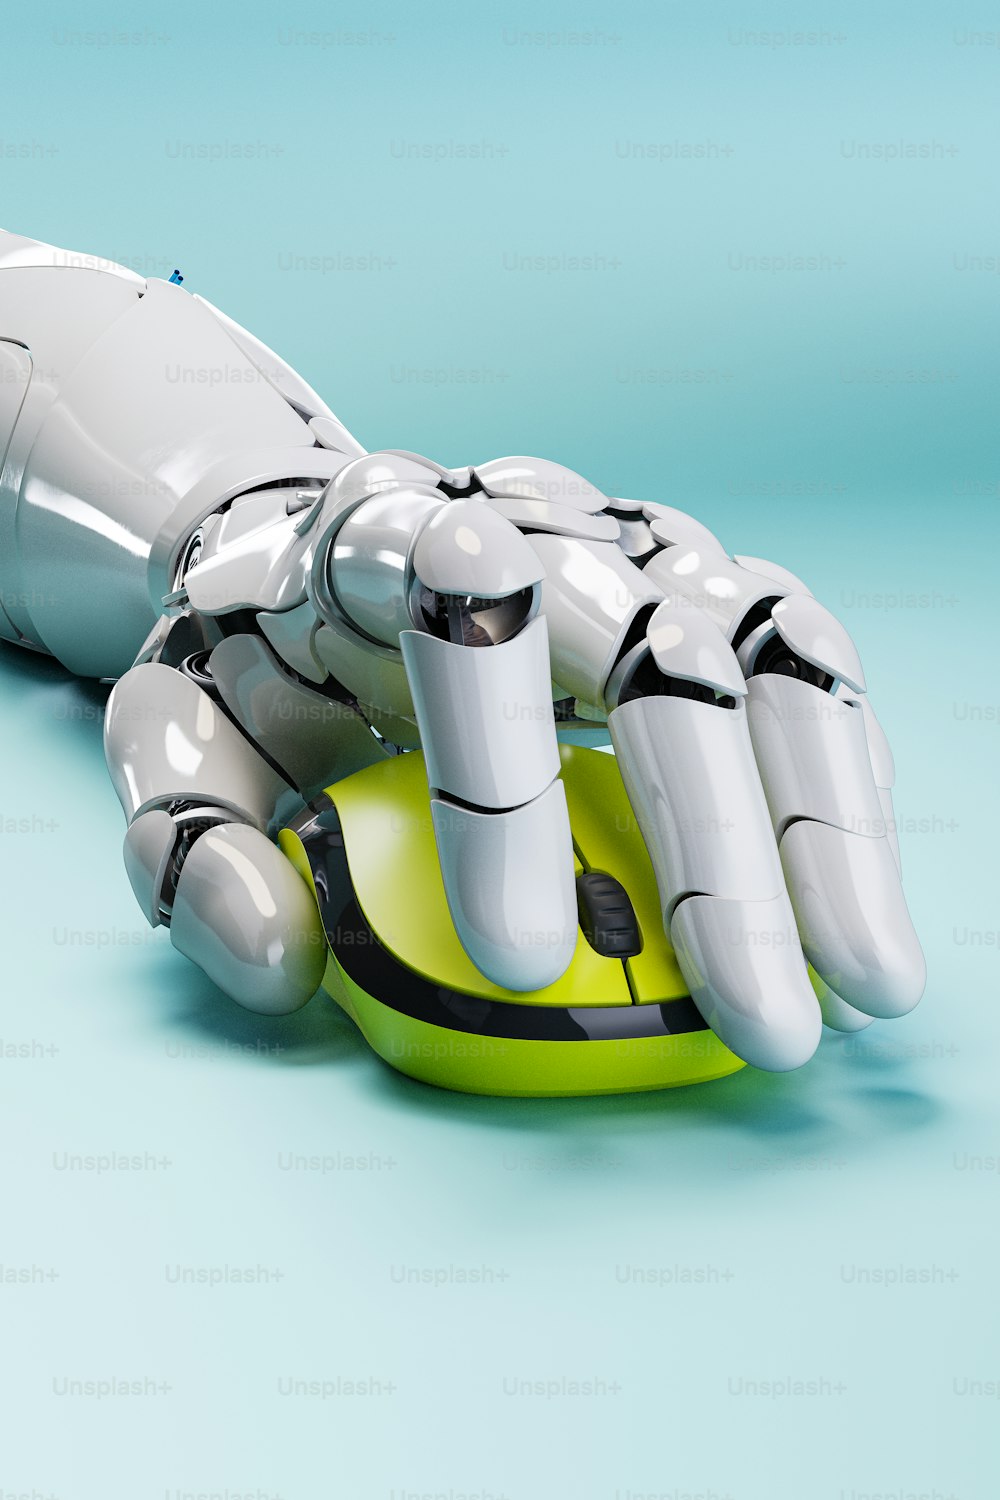 une main robotique assise sur un objet vert